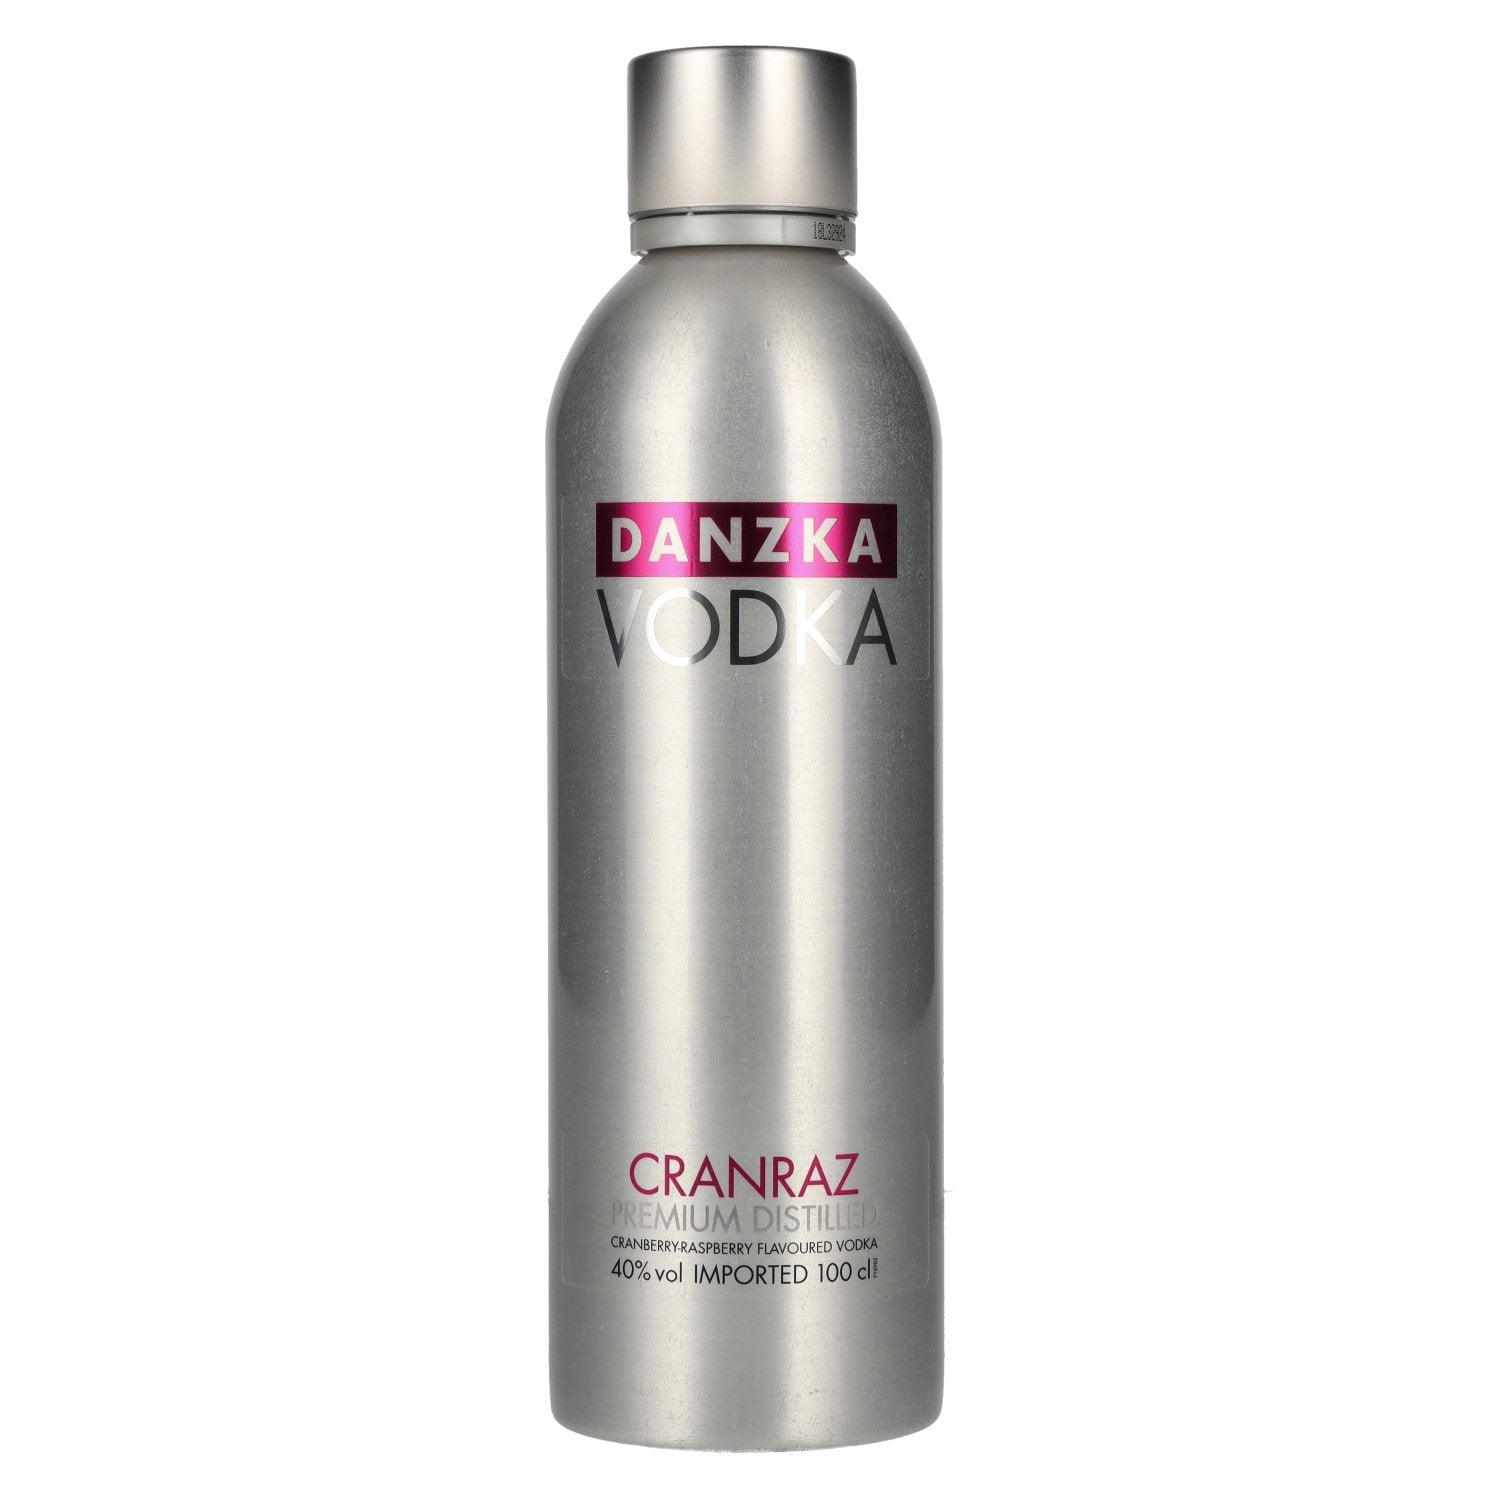 Danzka Vodka CRANRAZ Premium Distilled Flavoured Vodka 40% Vol. 1l